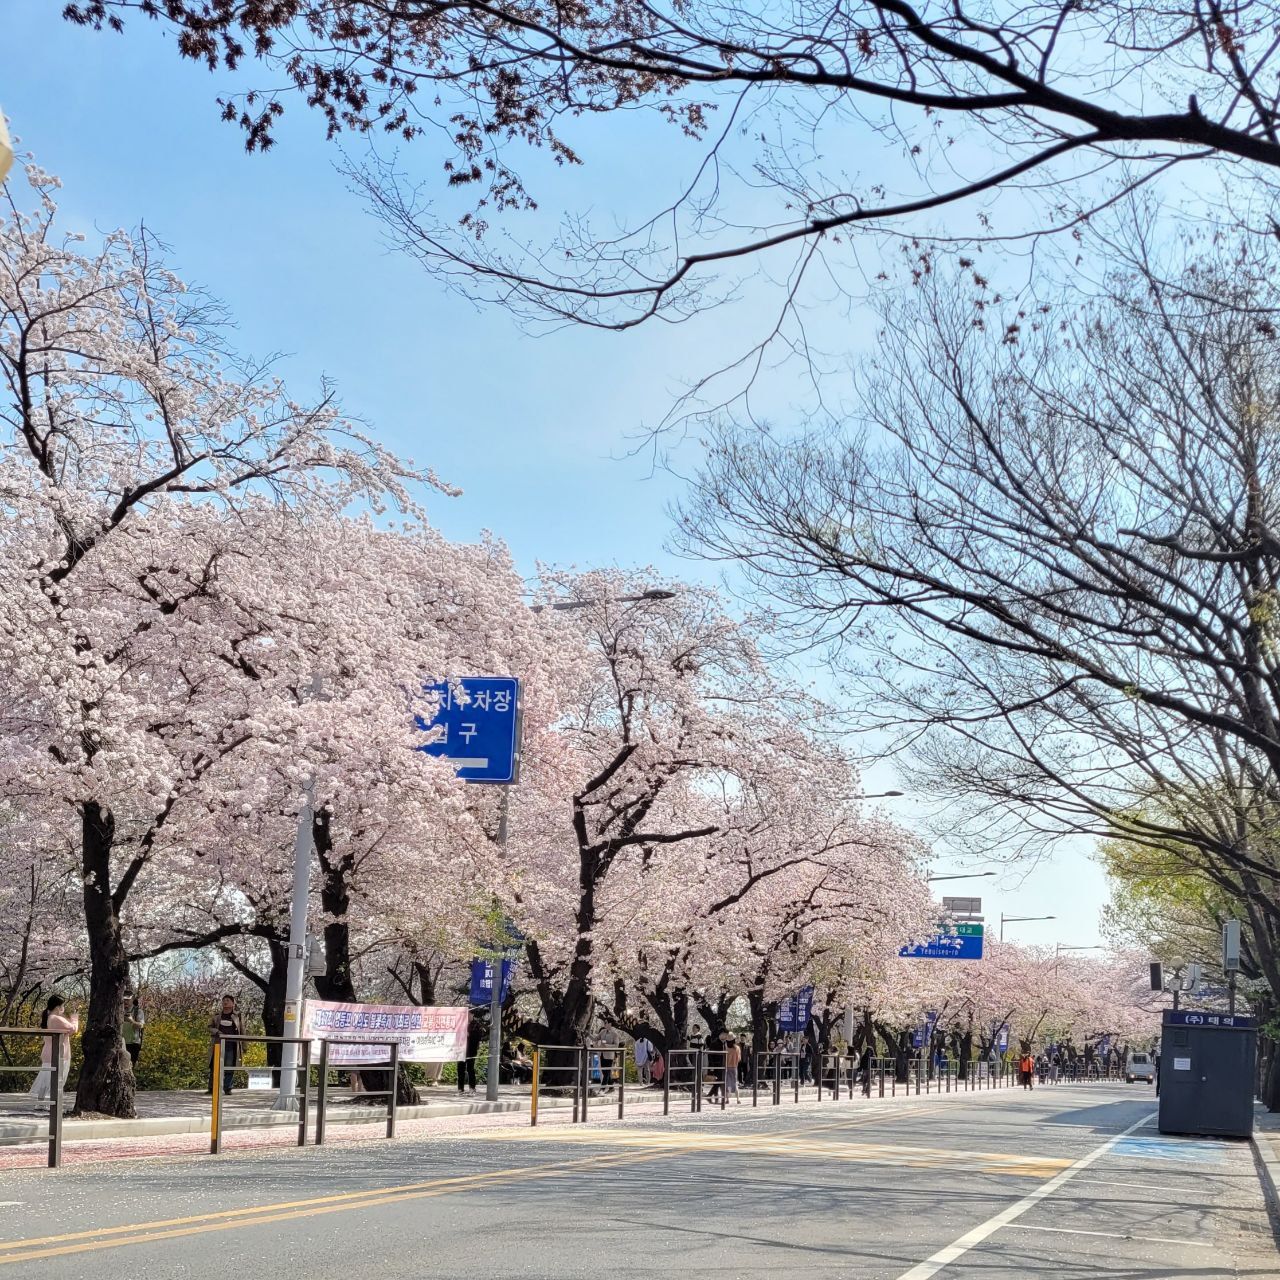 Yeouido Hangang Cherry Blossom